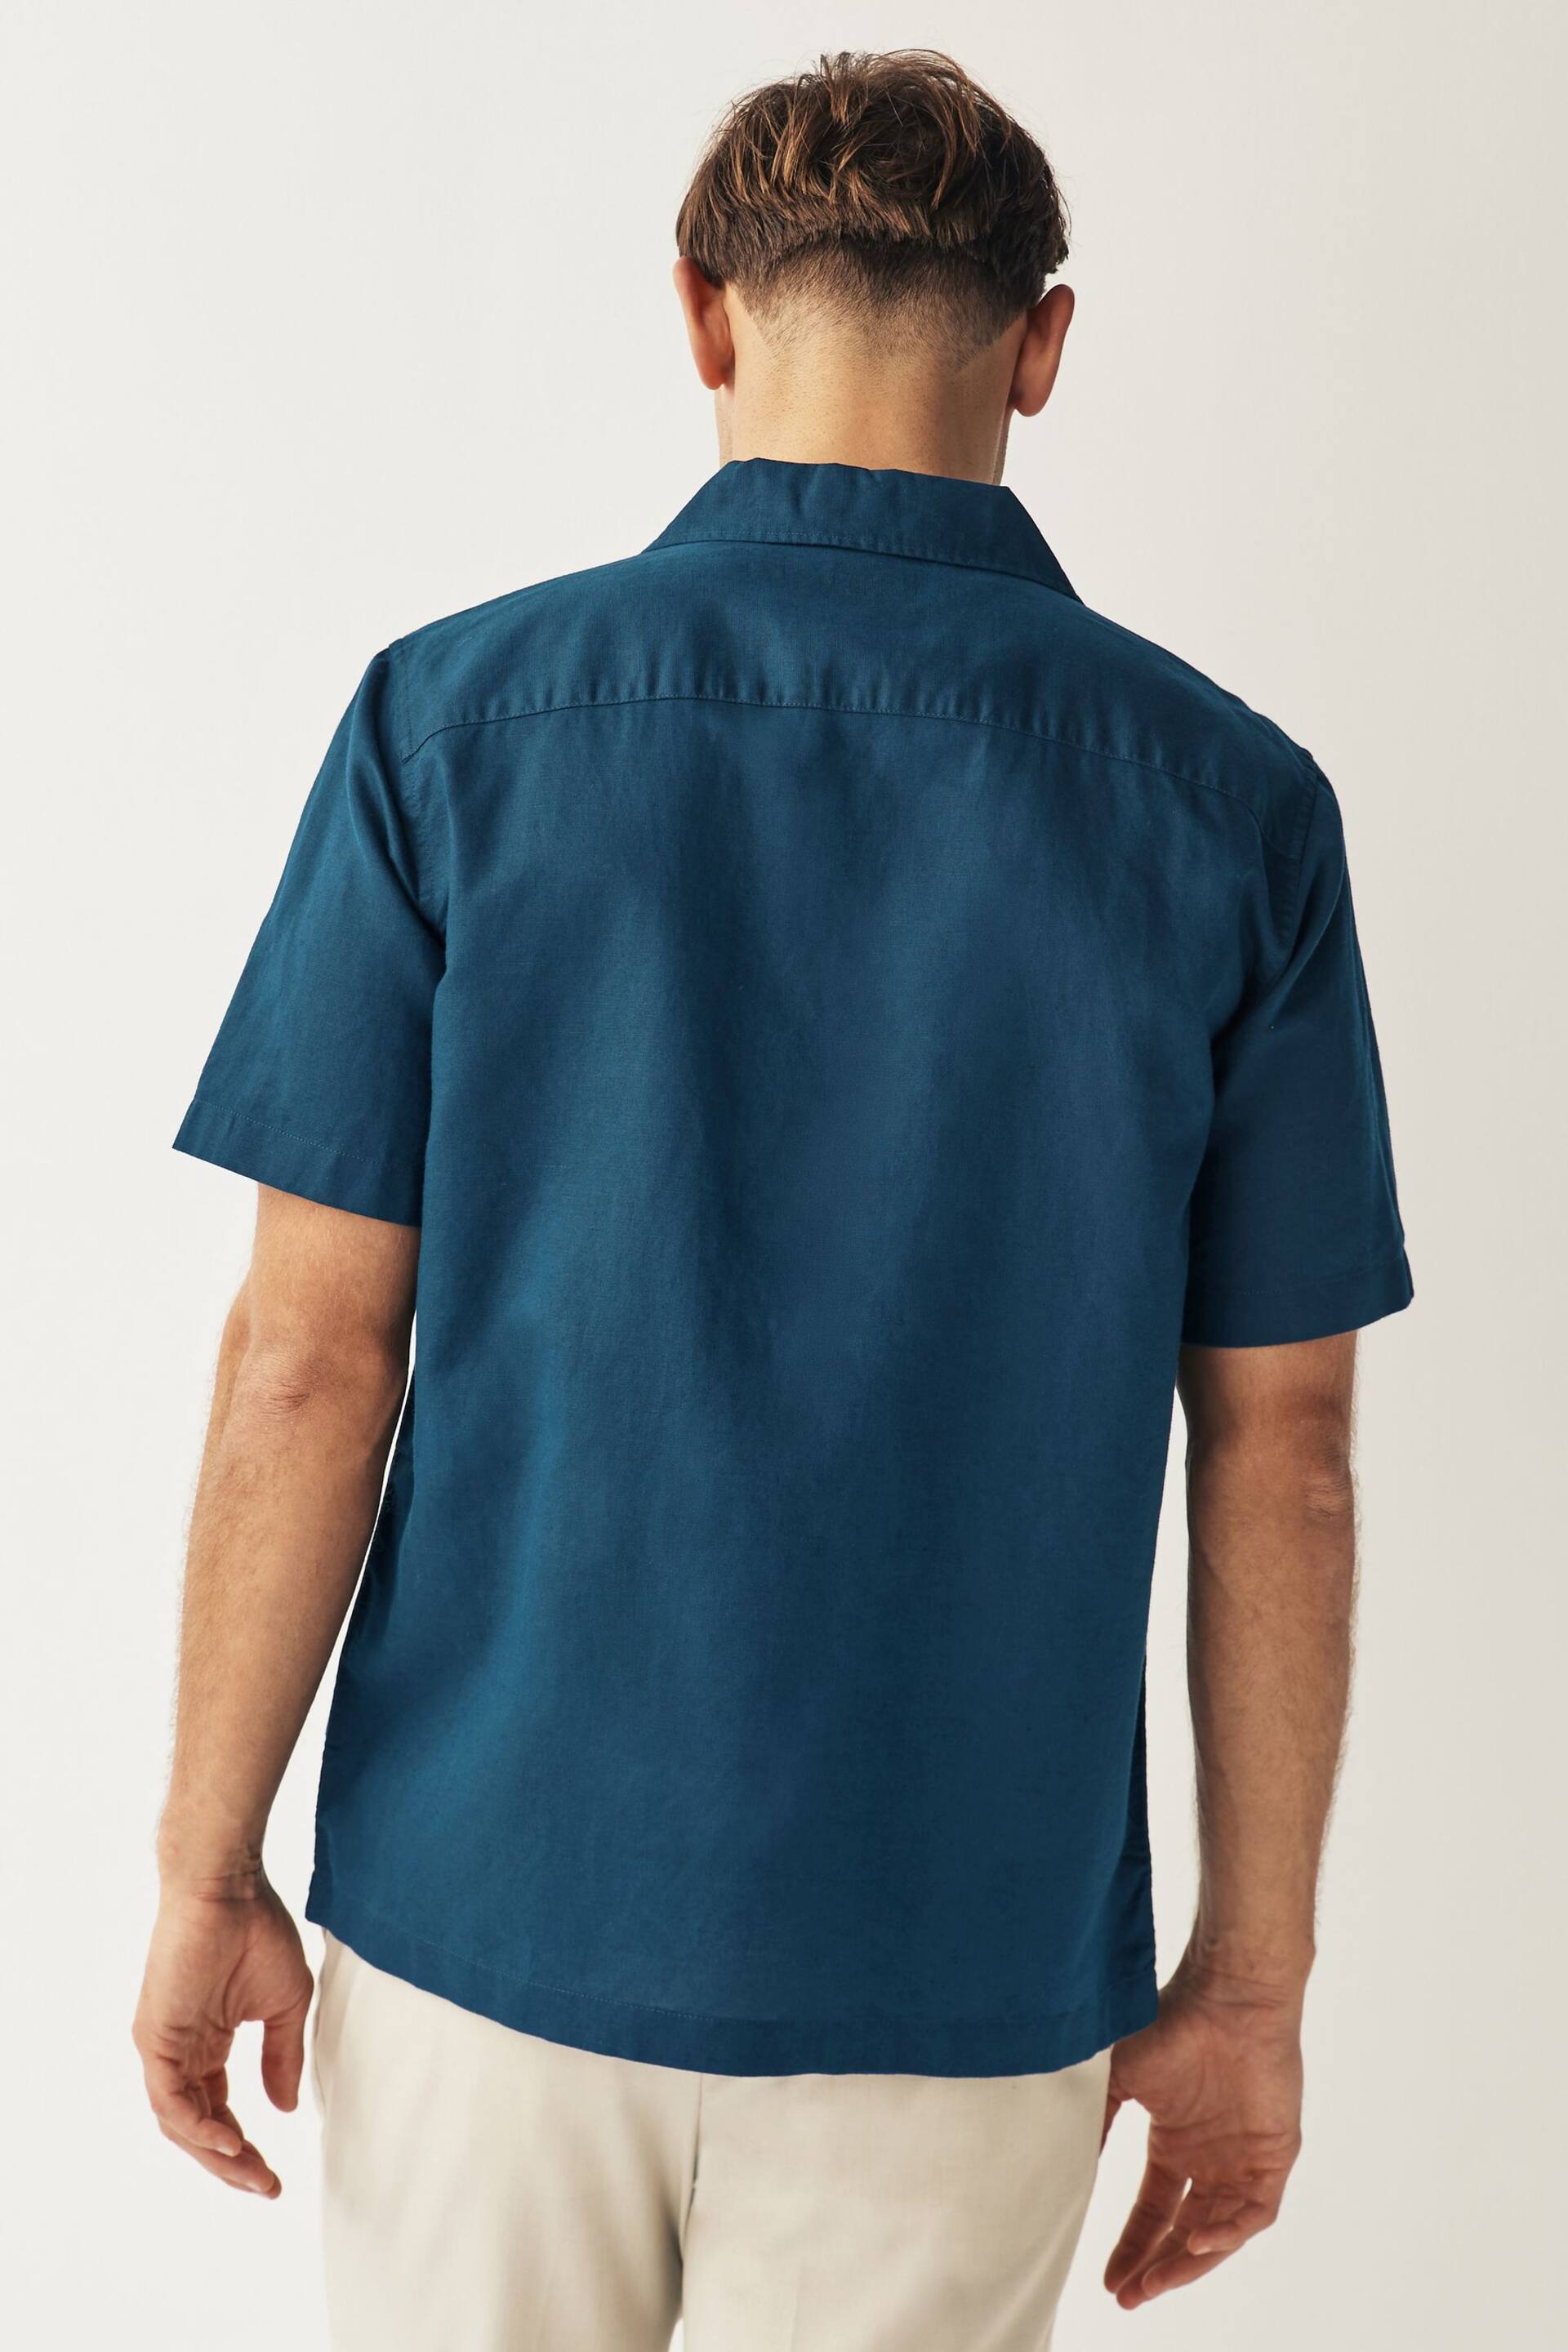 Navy Cuban Collar Linen Blend Short Sleeve Shirt - Image 2 of 7